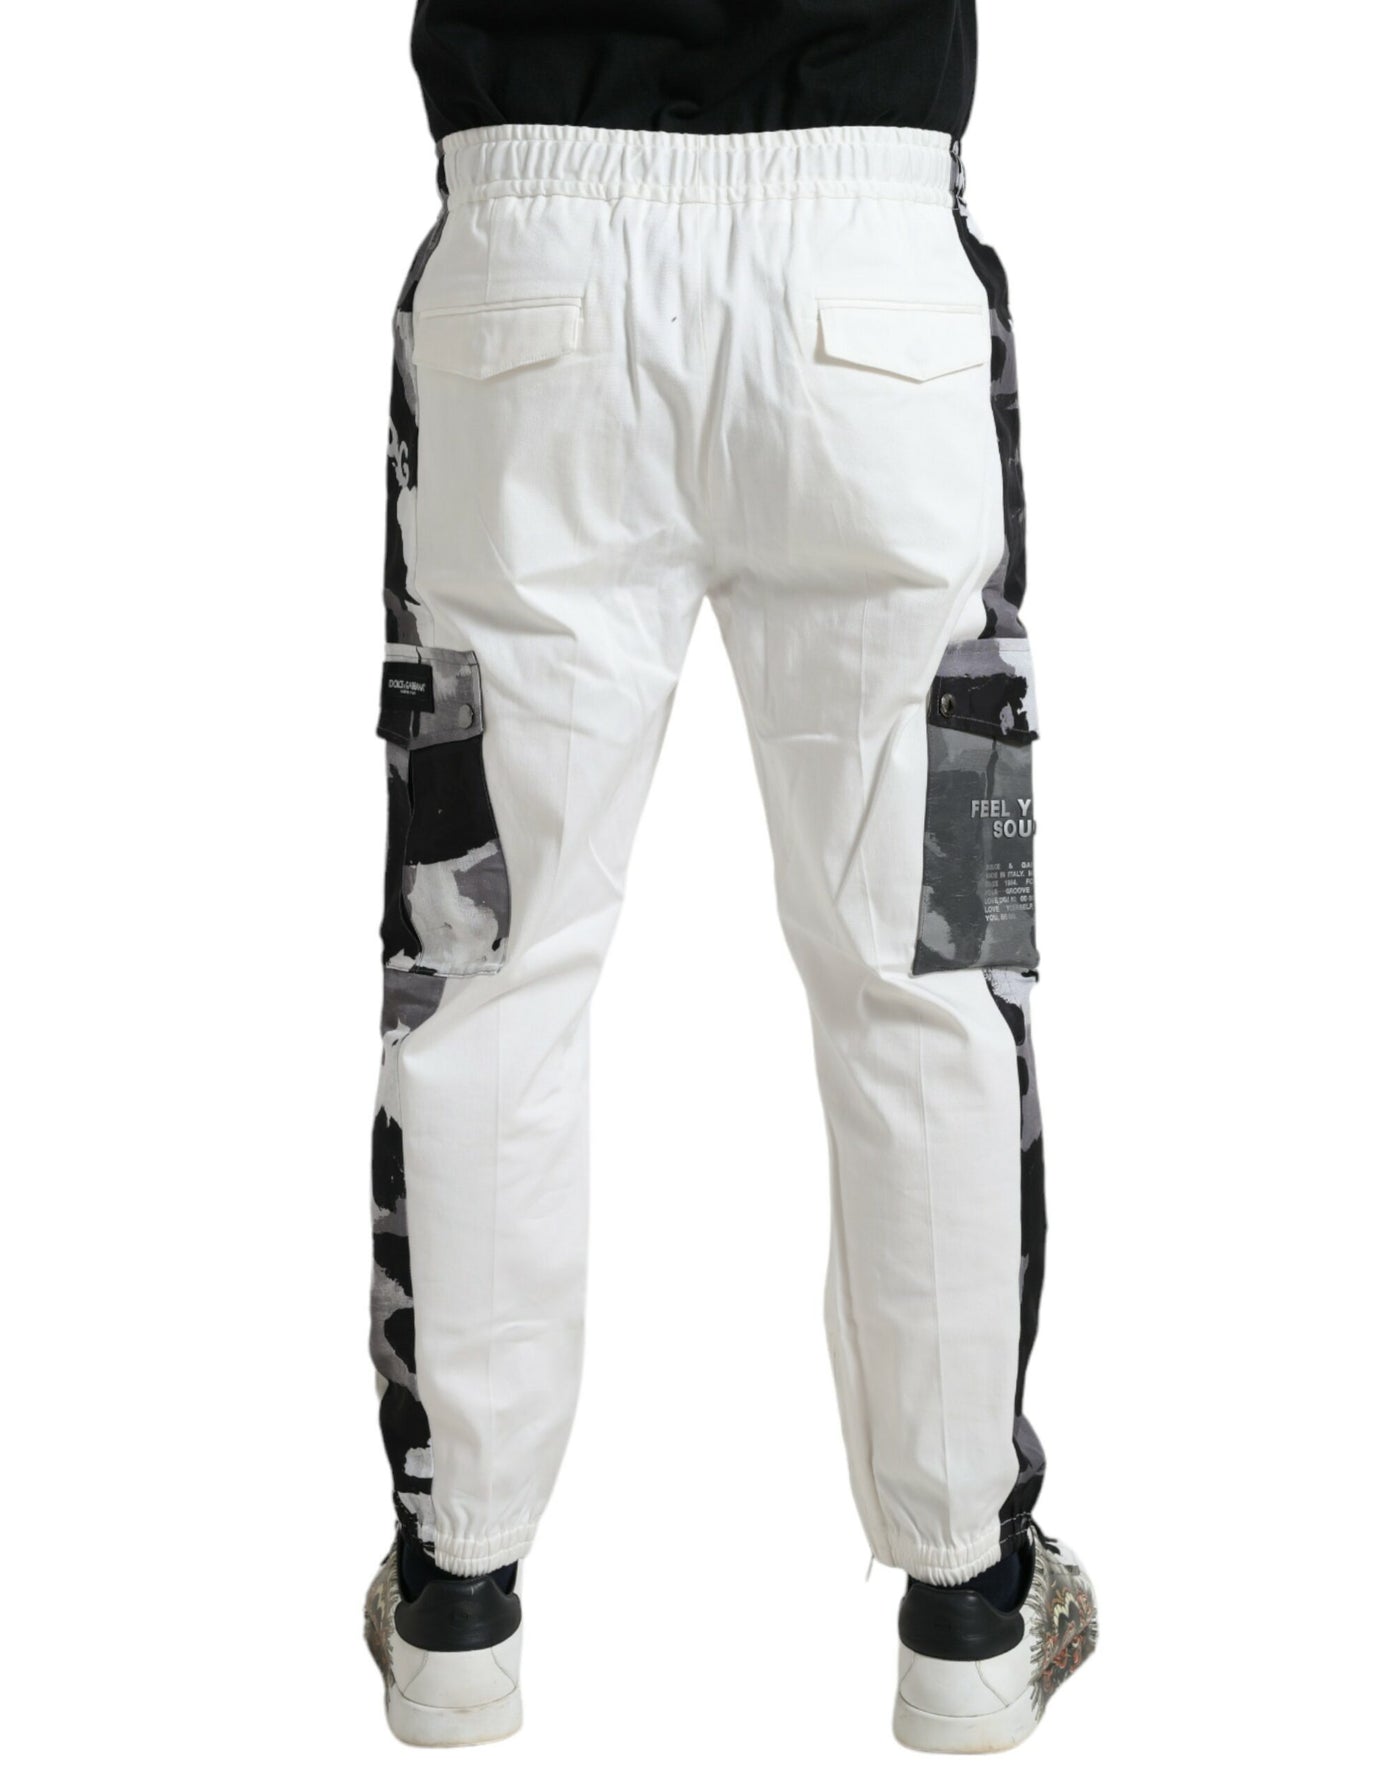 Dolce & Gabbana White Cotton Blend Jogger Men Sweatpants Pants